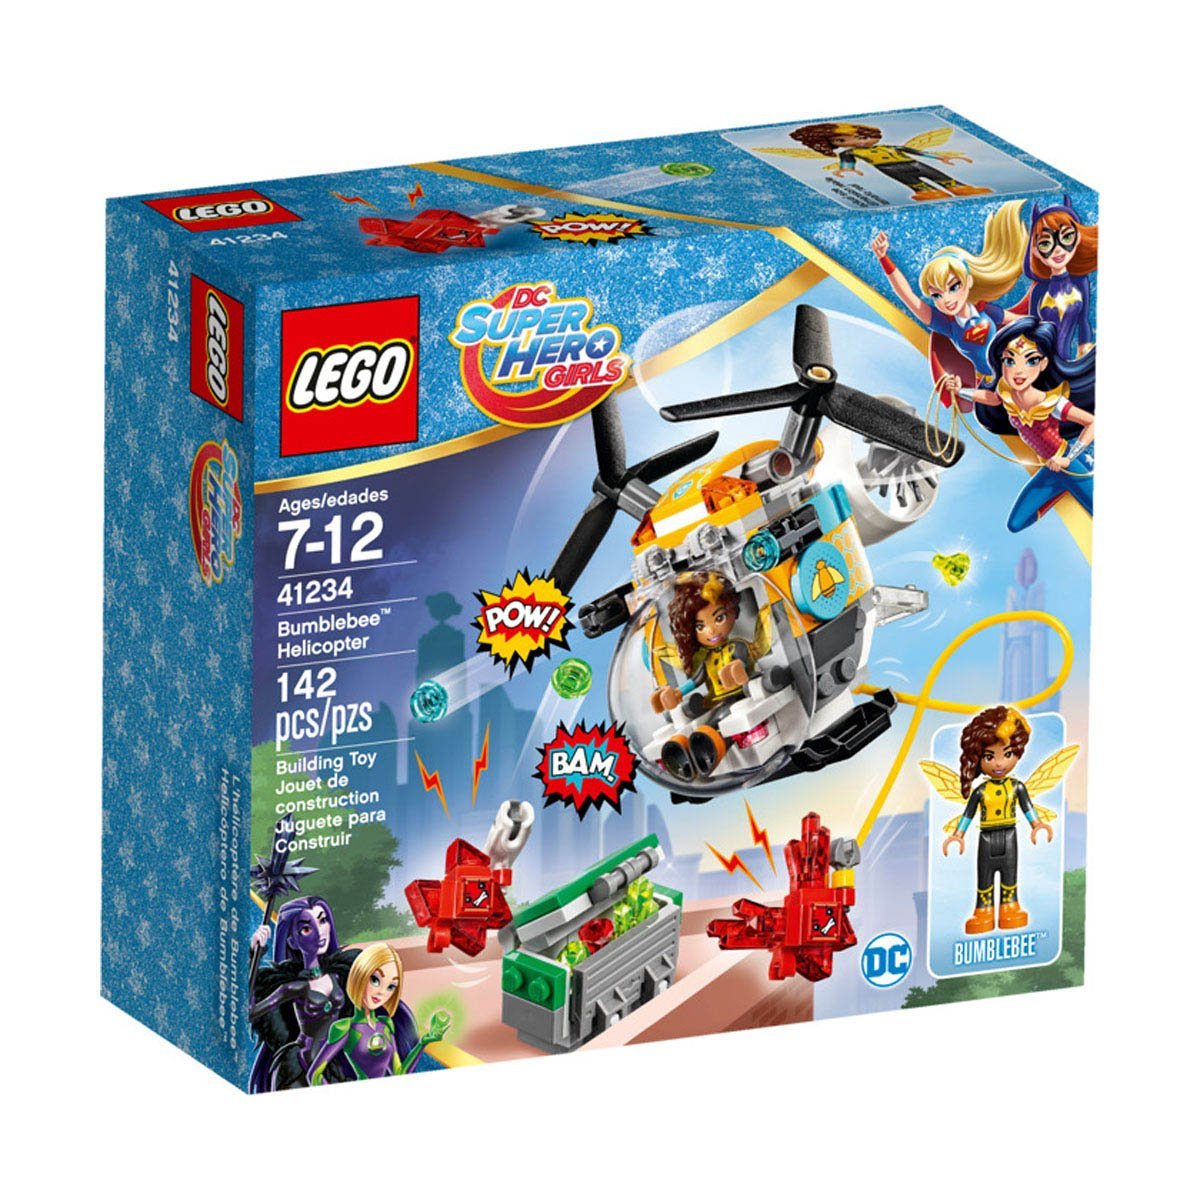 Helicoptero de Bumblebee Lego